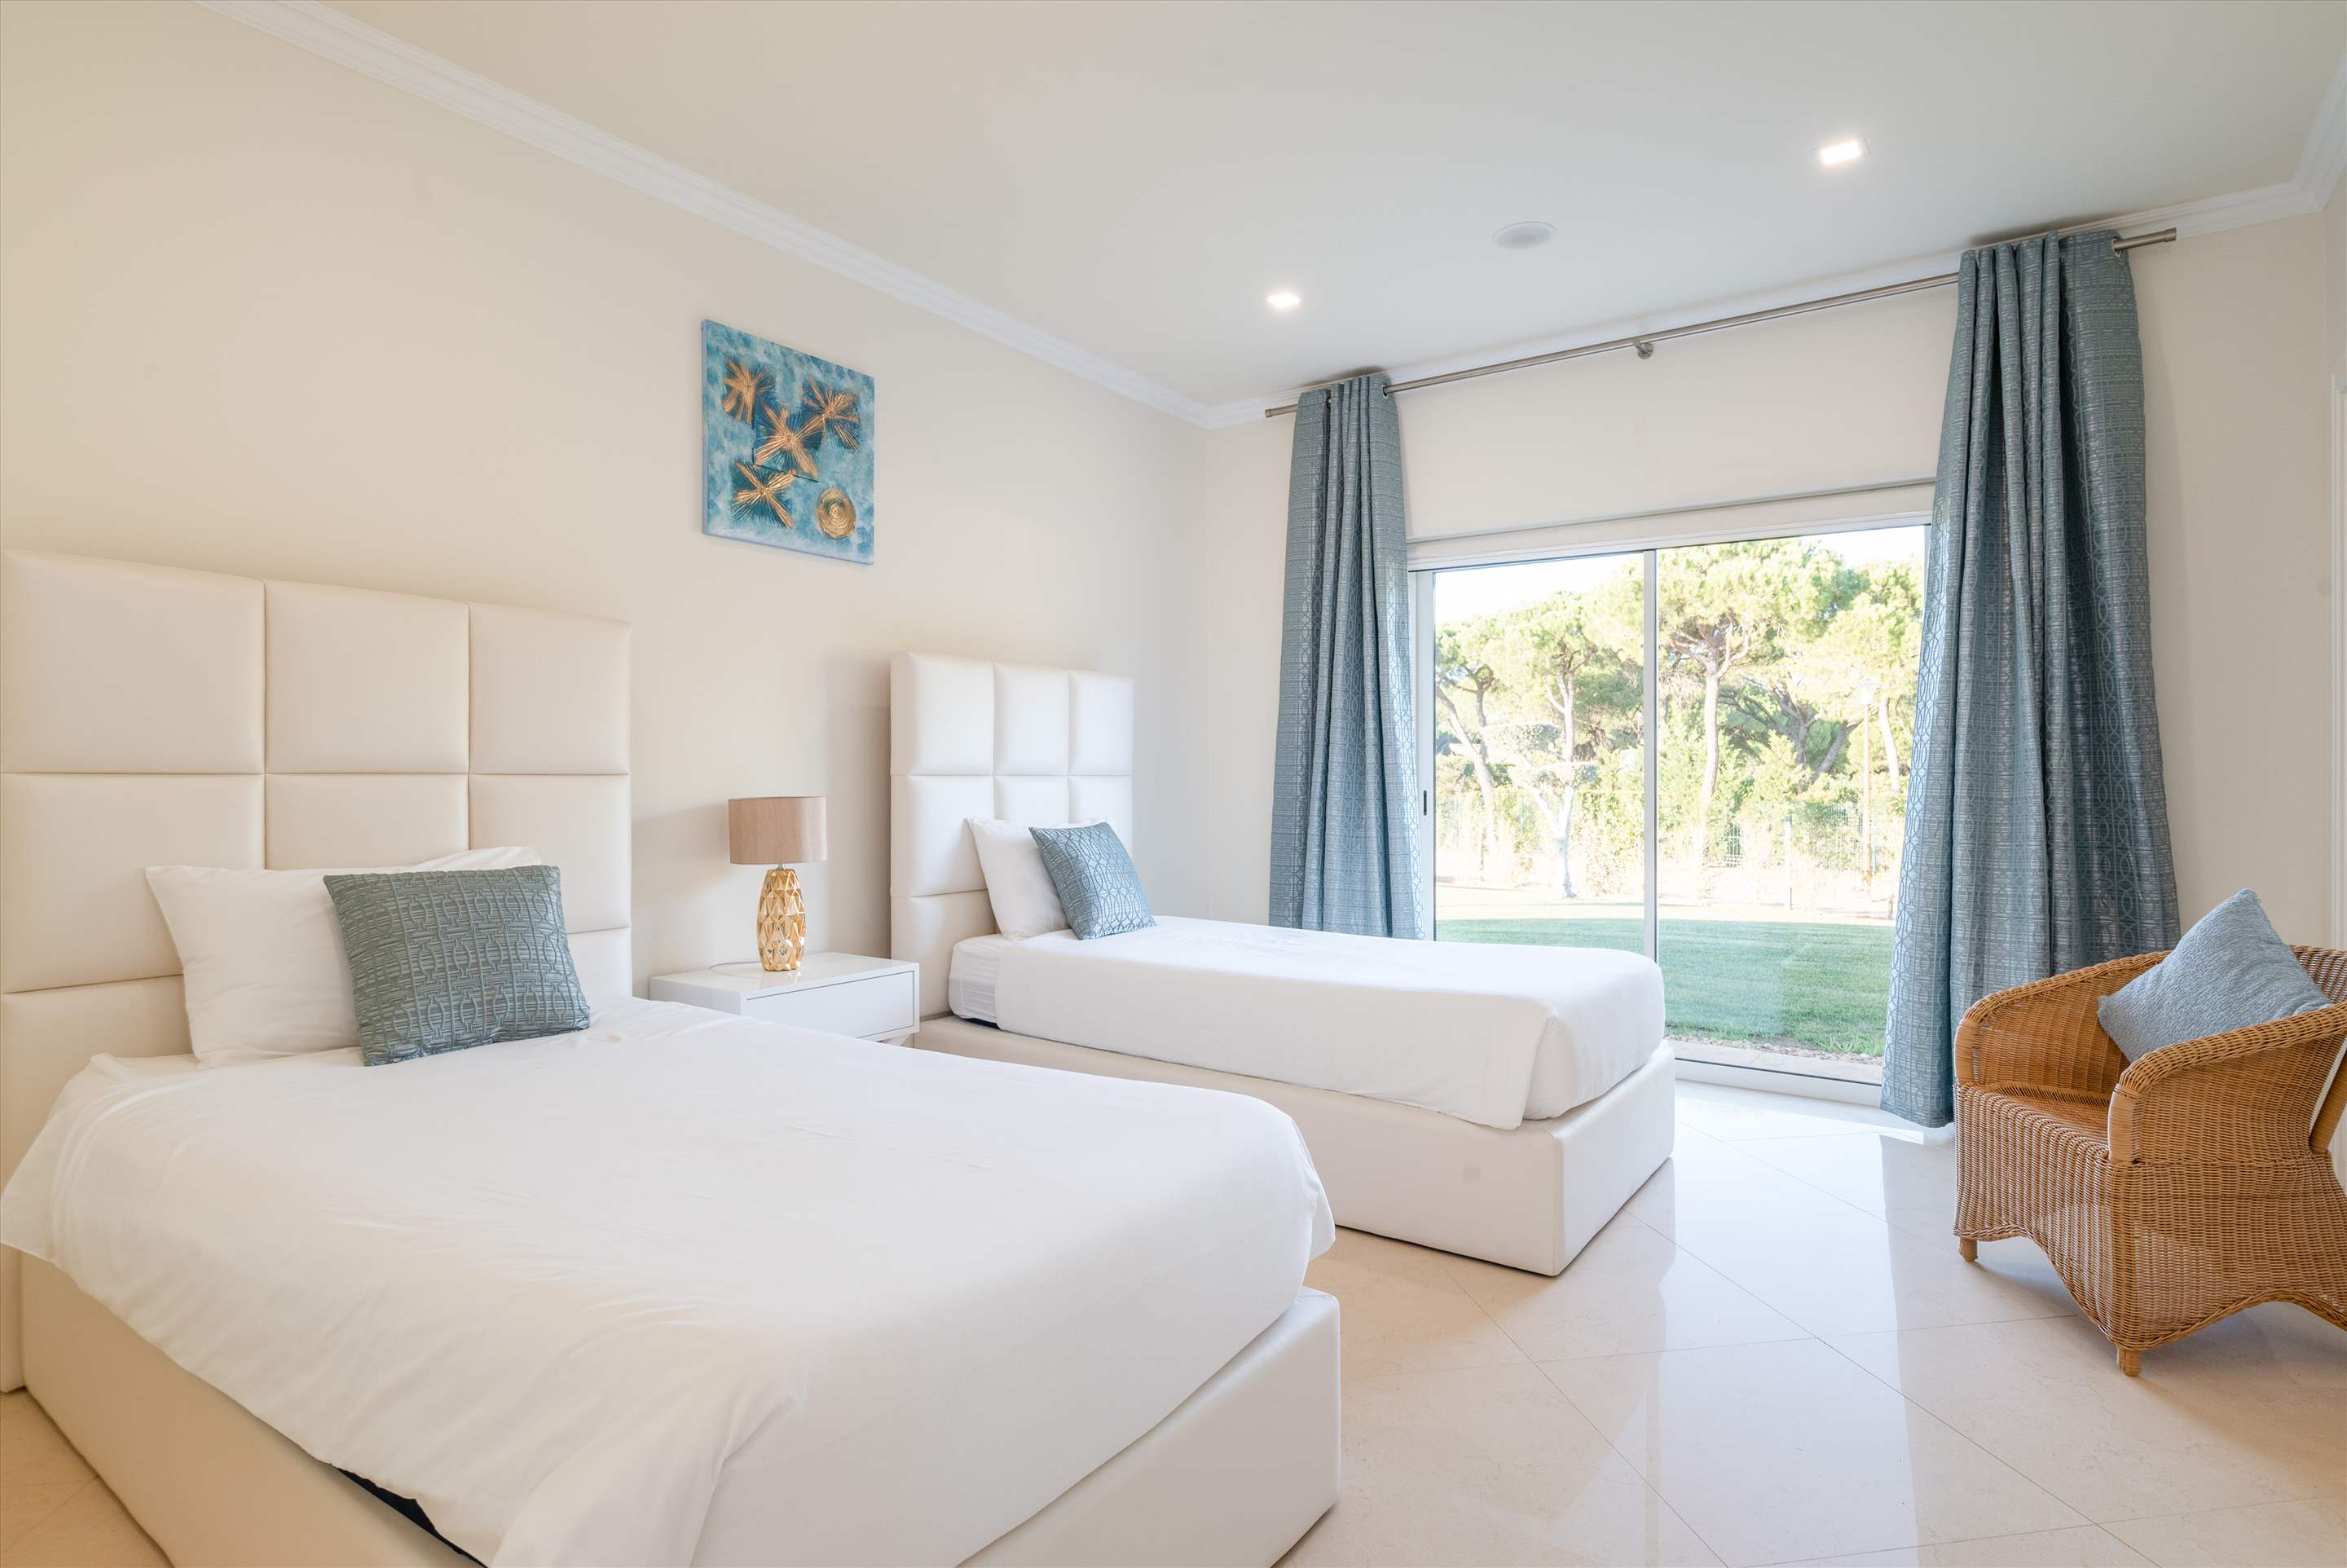 27 Pinhal Velho, 7 bedrooms rate, 7 bedroom villa in Vilamoura Area, Algarve Photo #21